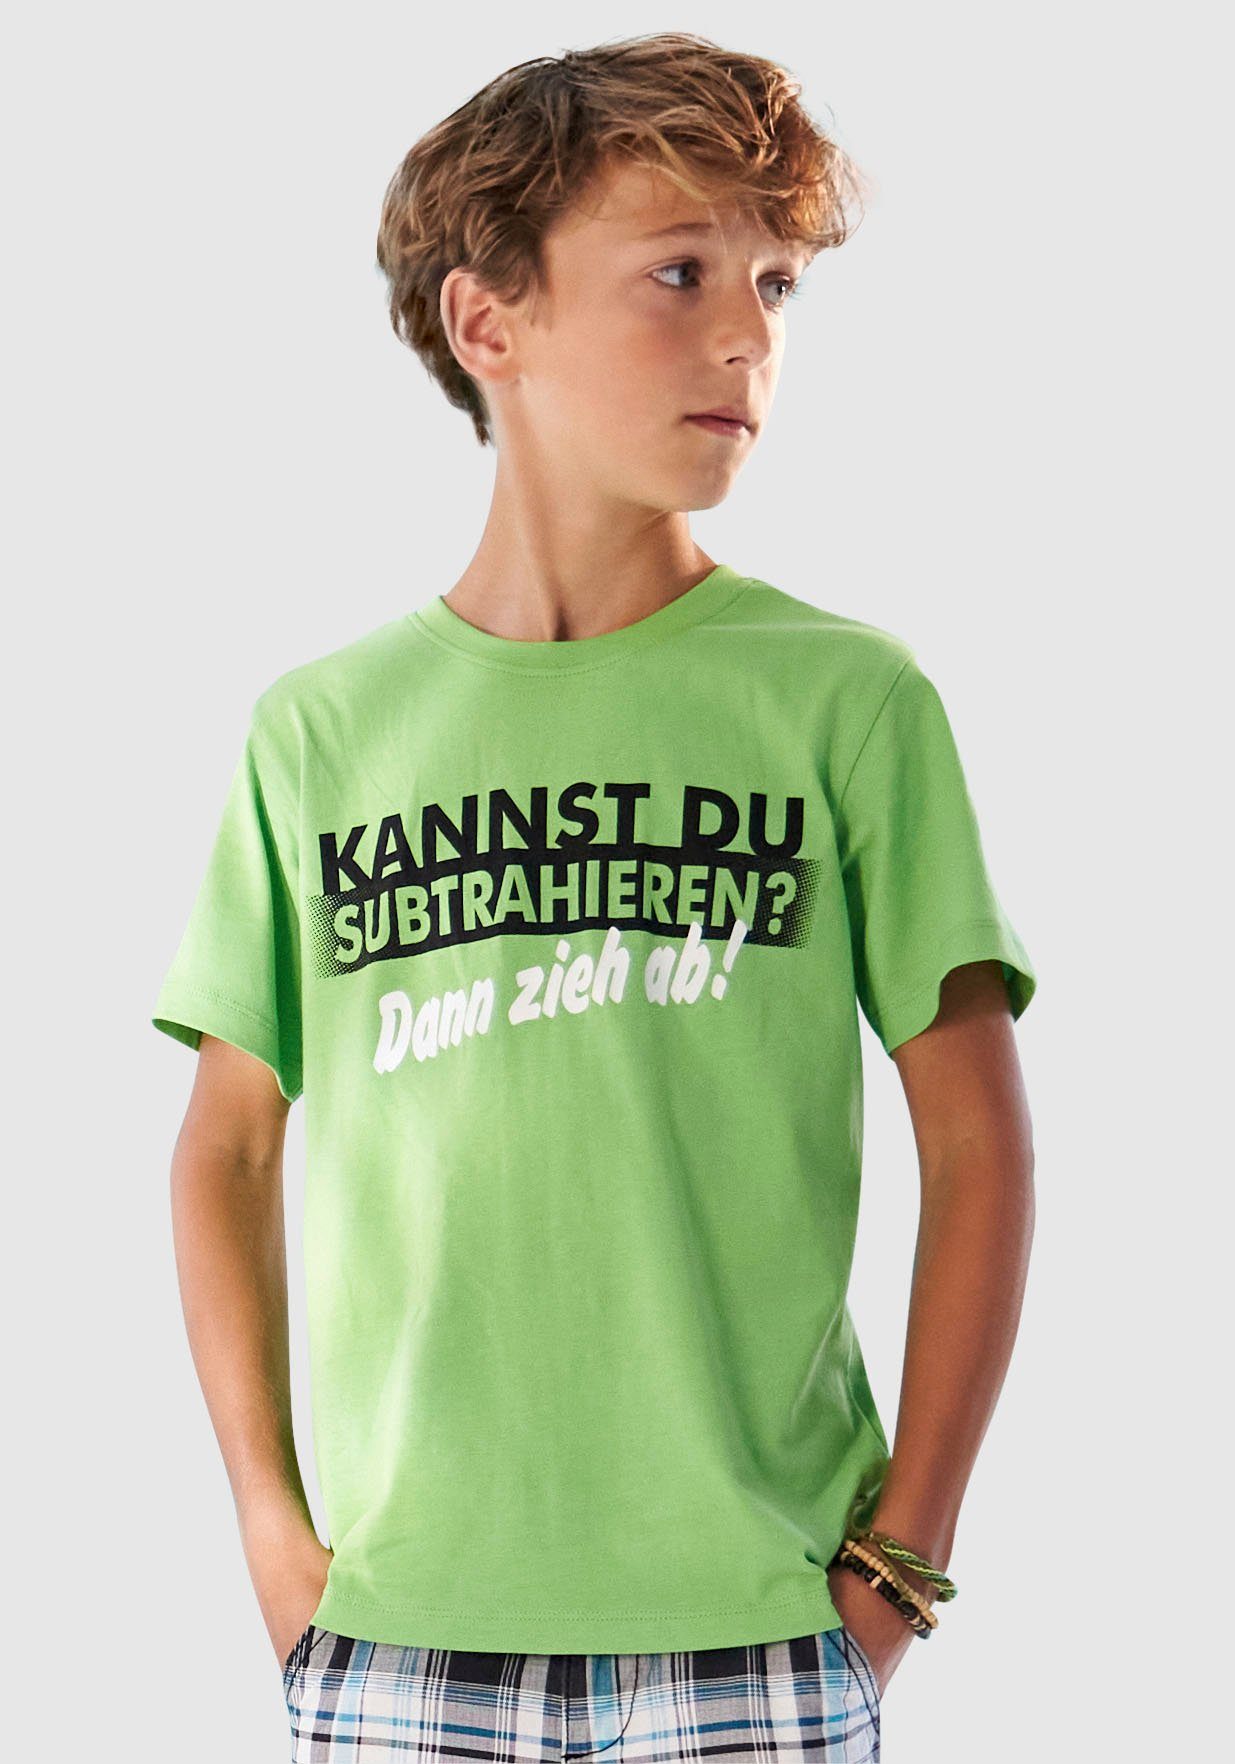 SUBTRAHIEREN?, T-Shirt Spruch KANNST KIDSWORLD DU